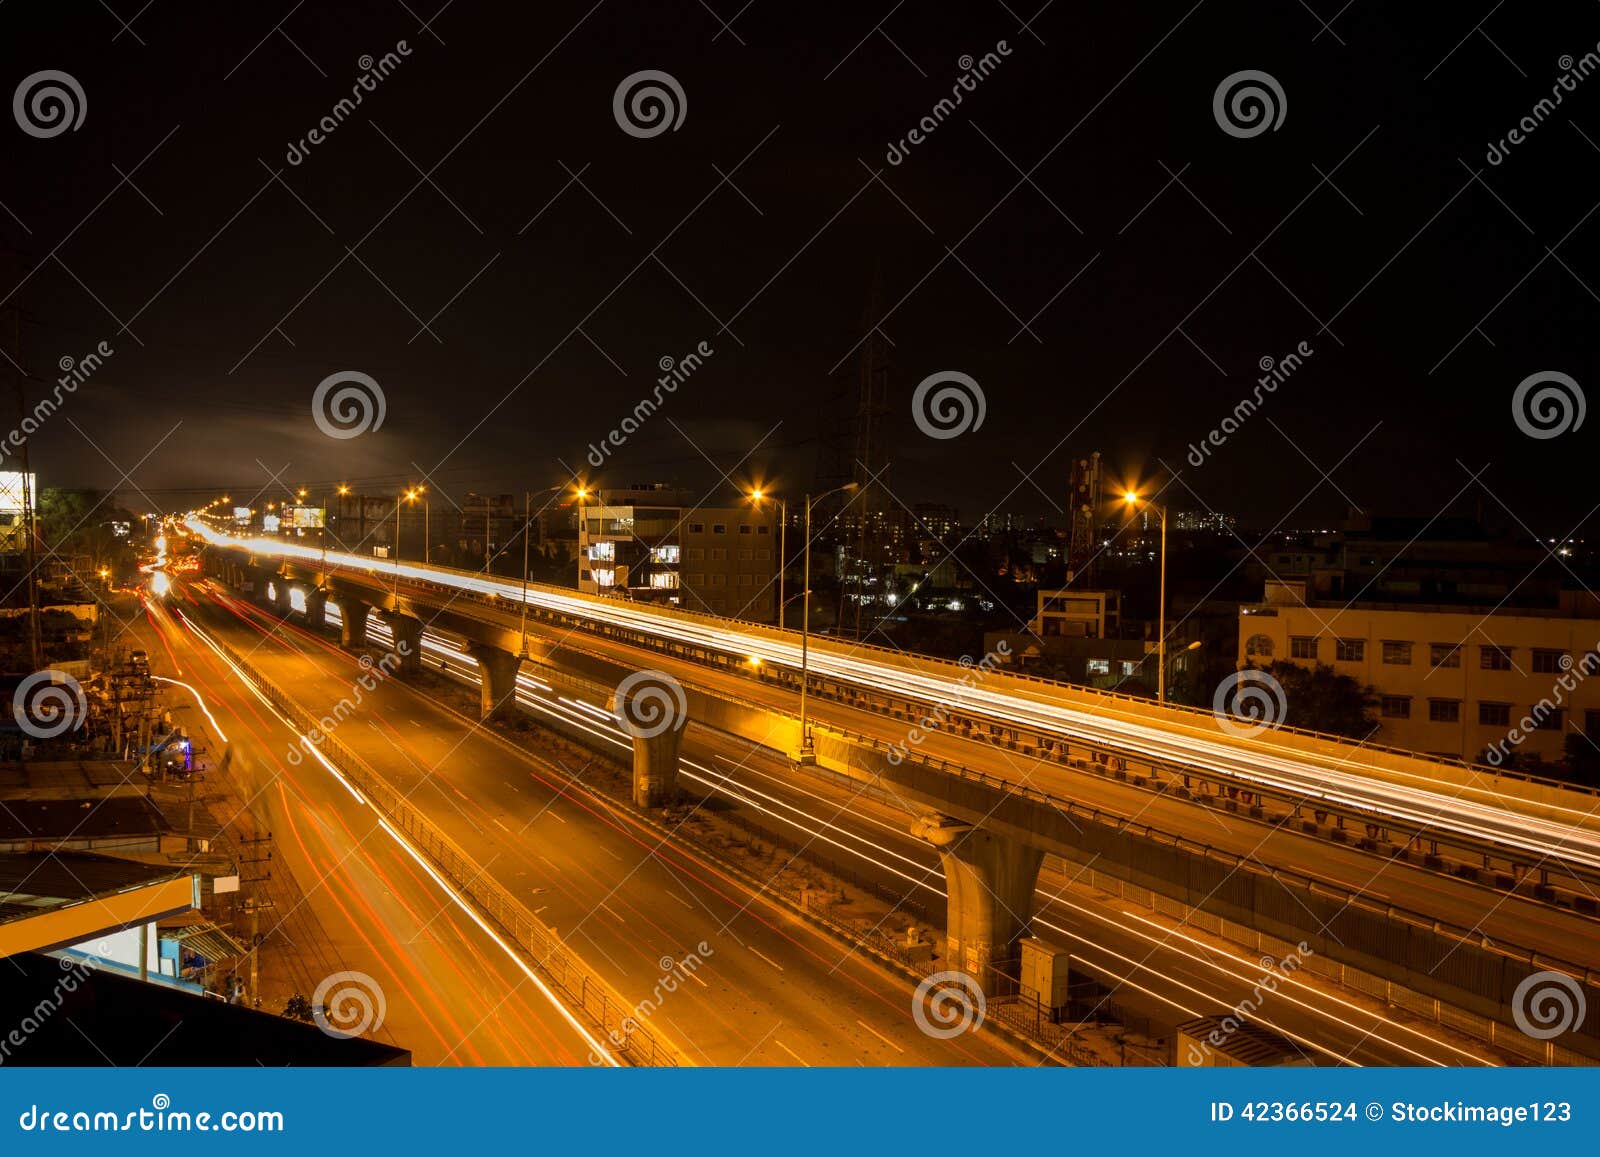 bangalore city traffic